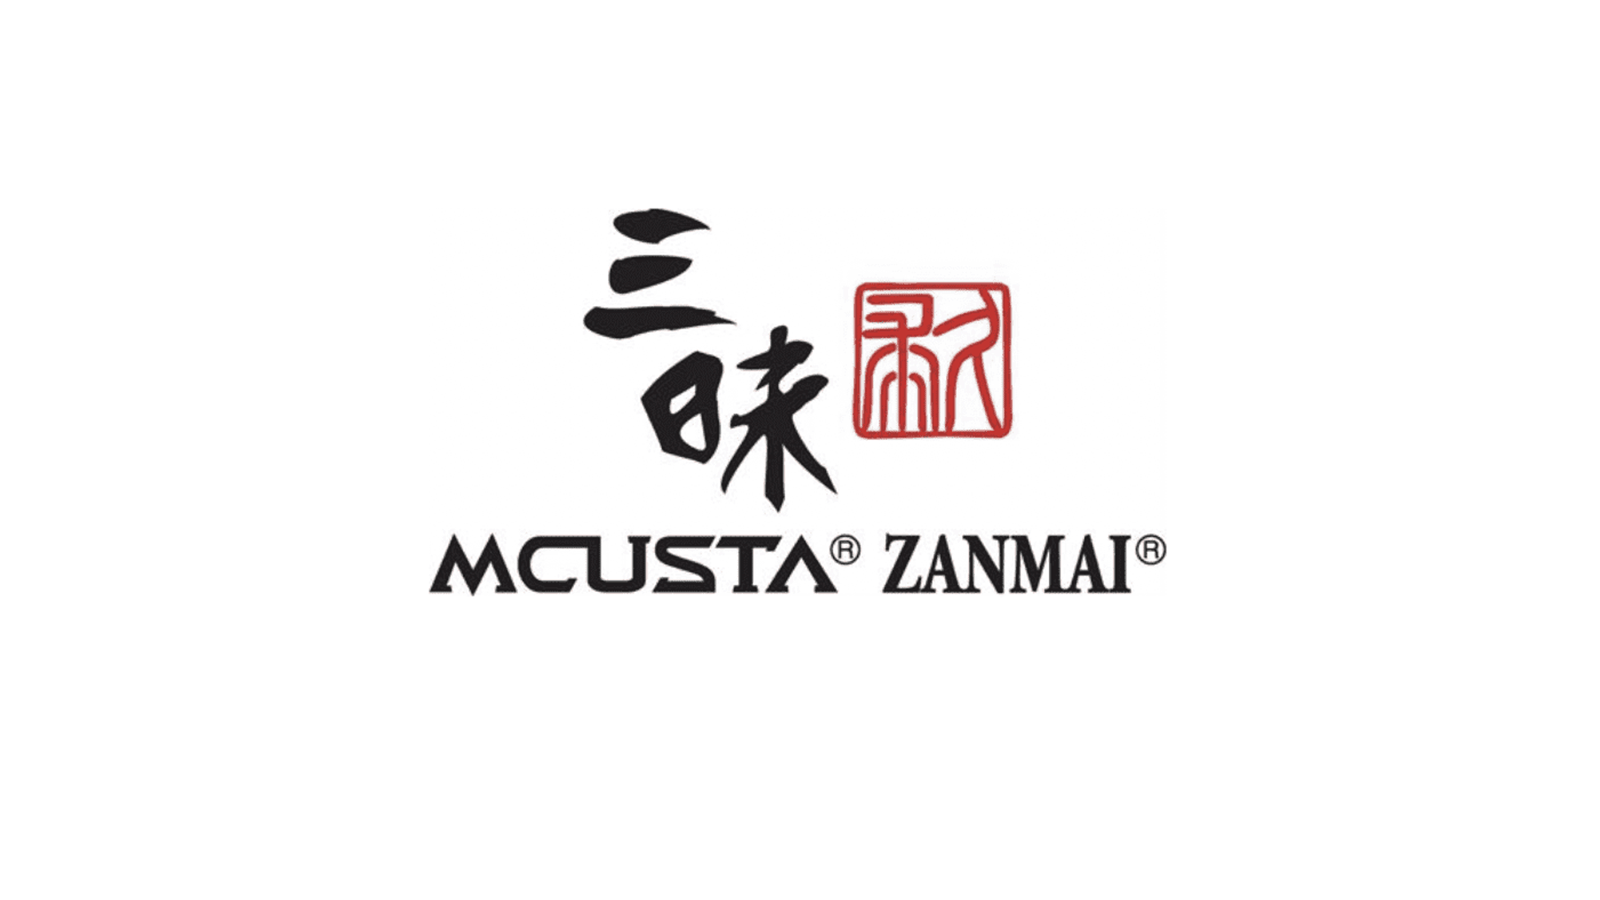 Mcusta / Zanmai